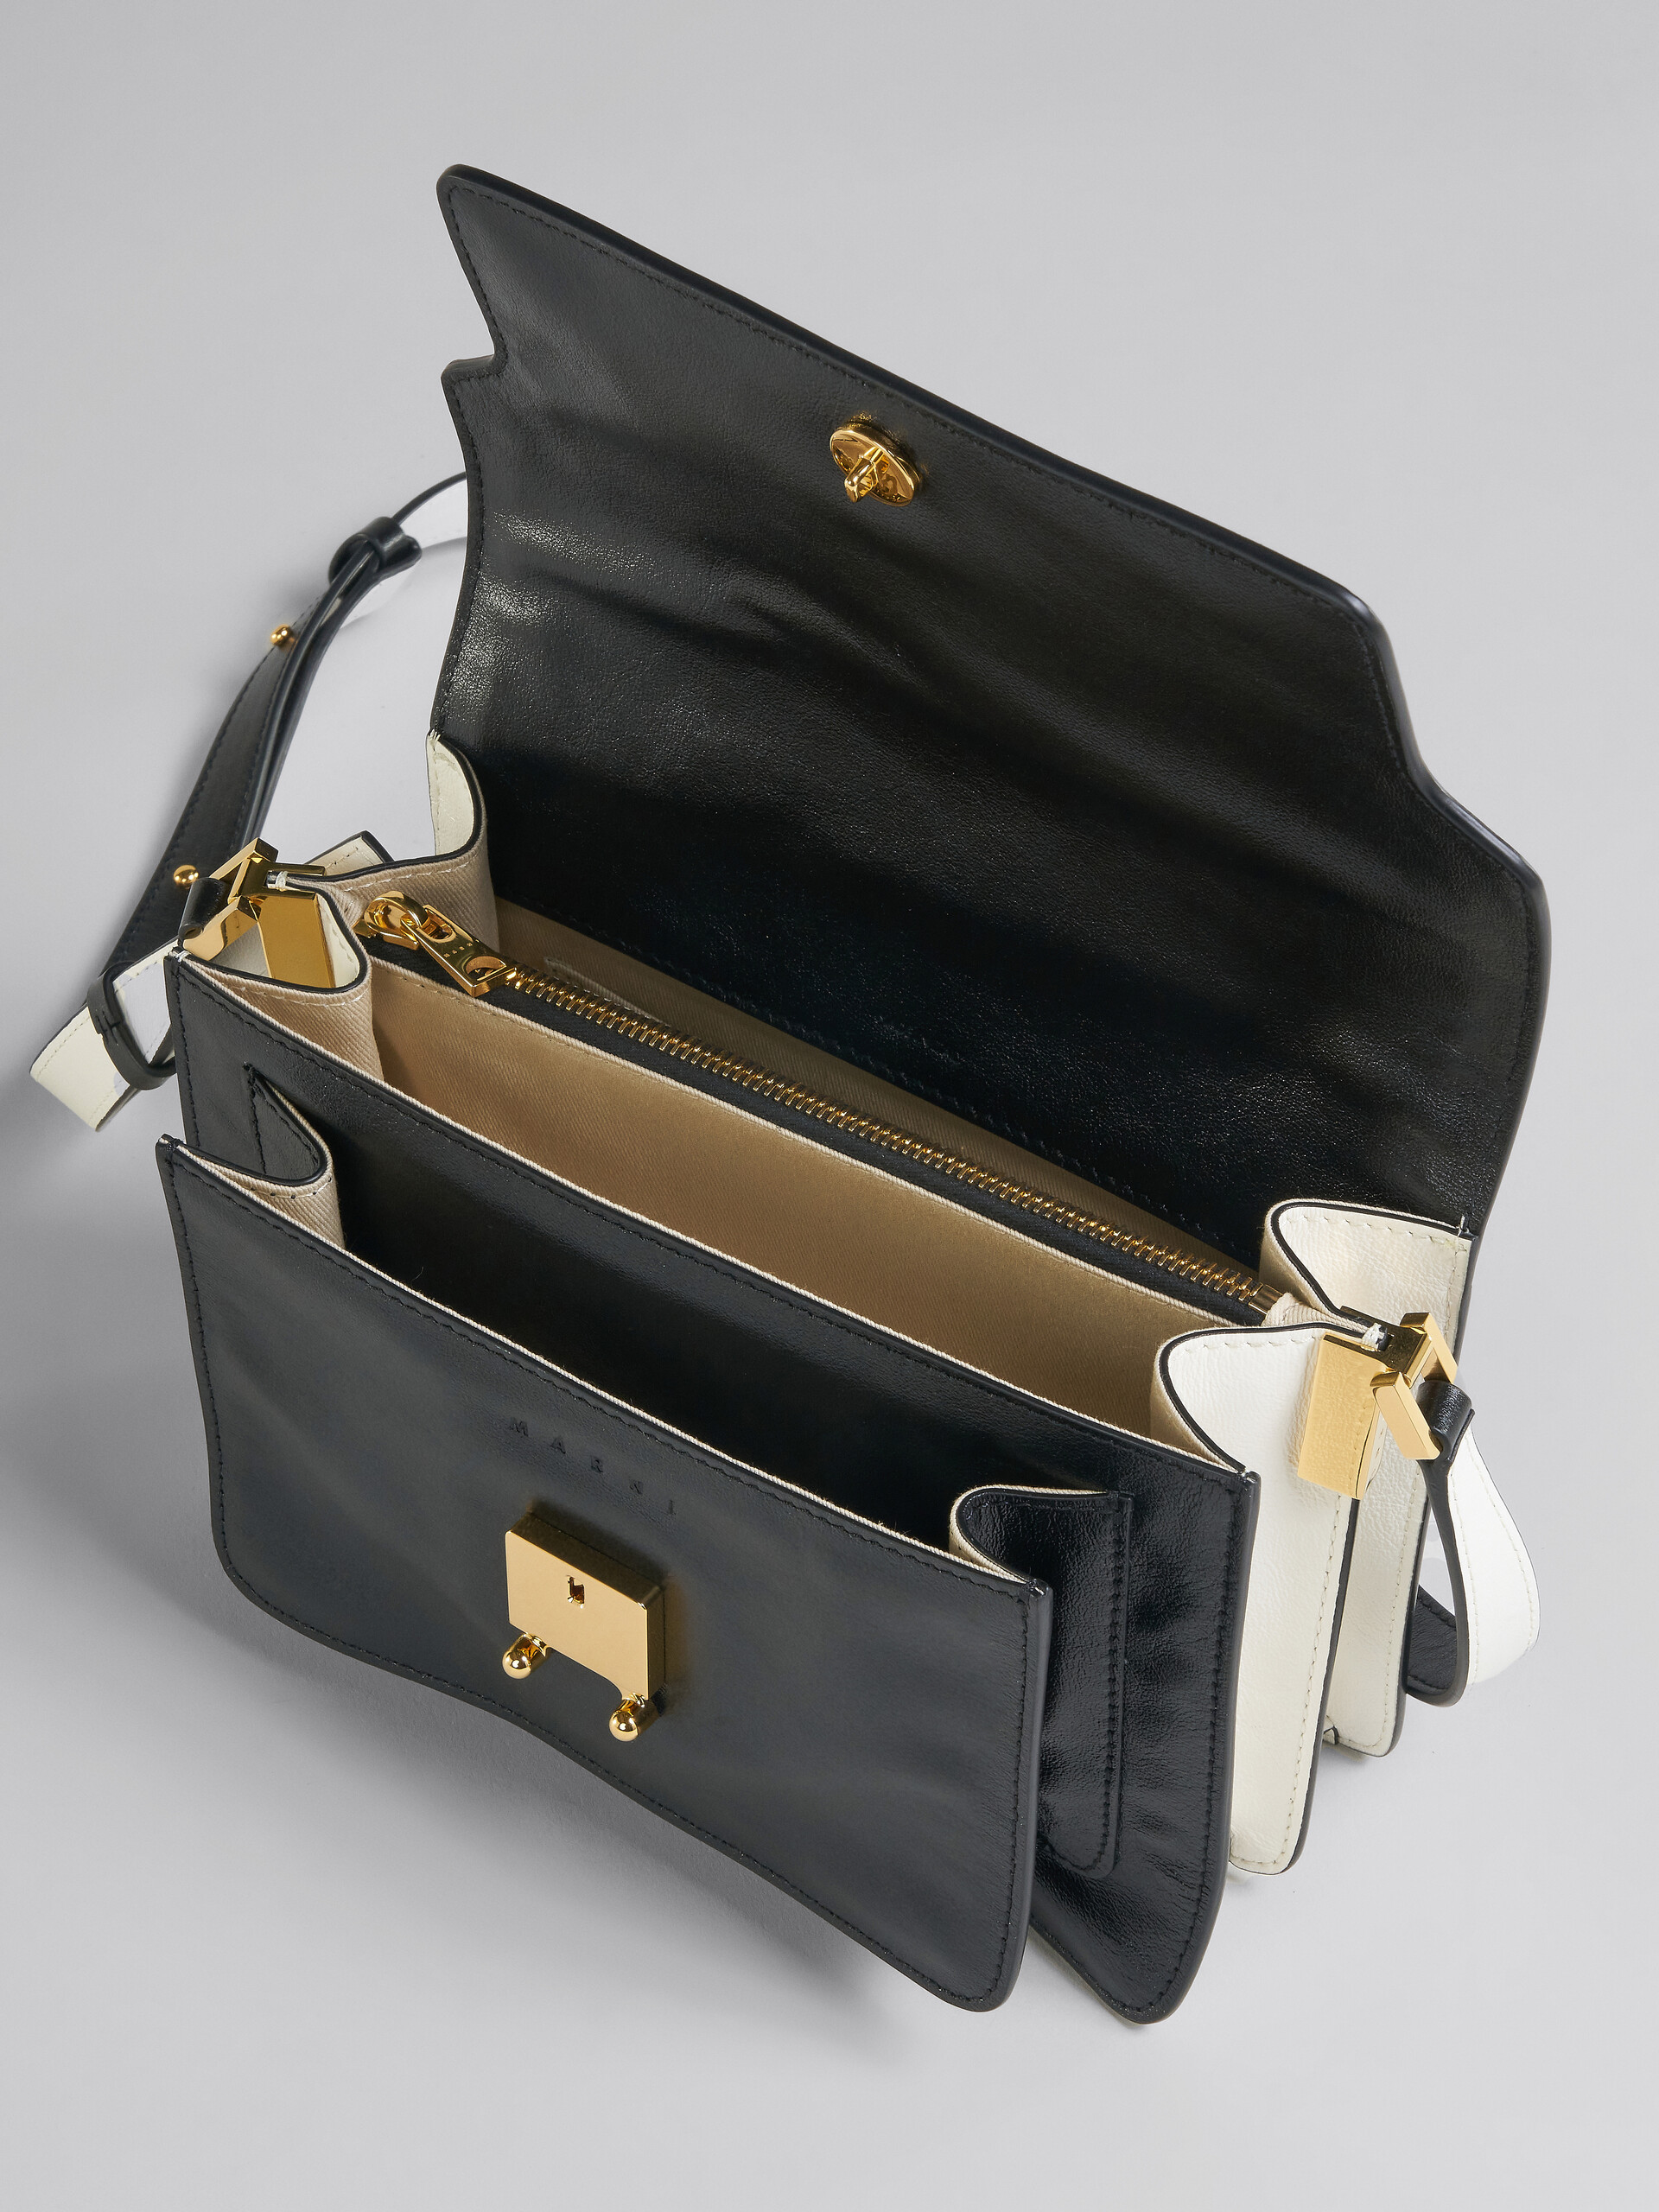 Trunk Soft Medium Bag in black and white leather - Shoulder Bag - Image 4